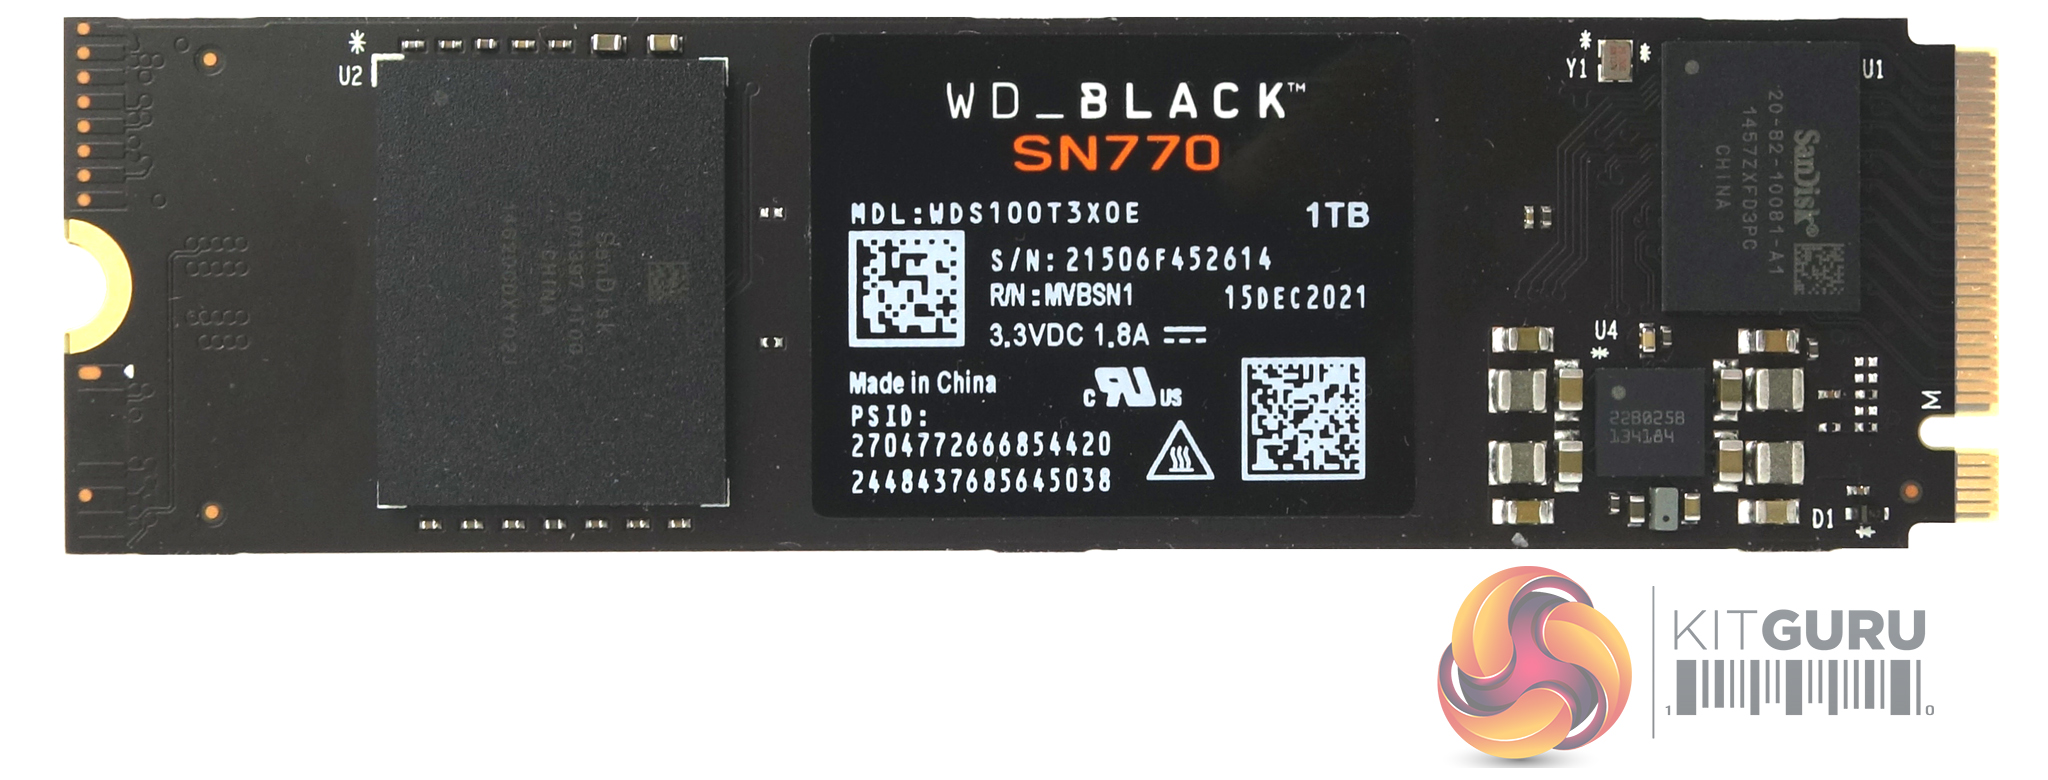 Review | Part SSD KitGuru- 2 Black WD 1TB SN770